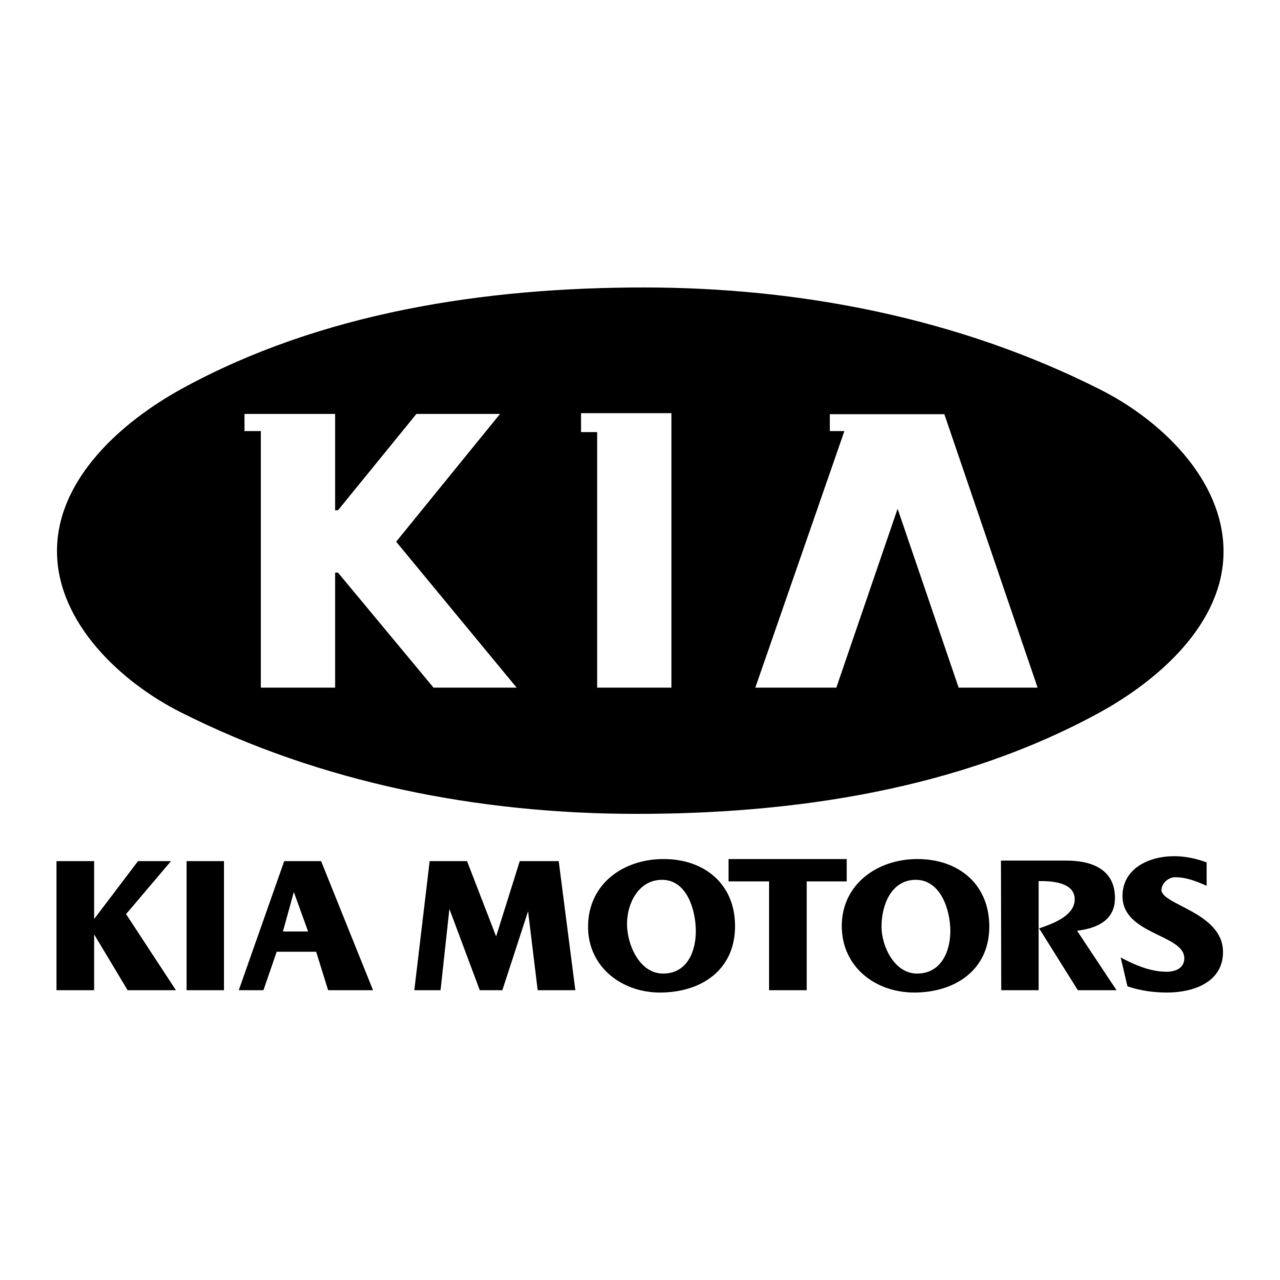 Imagem PNG do logotipo da Kia